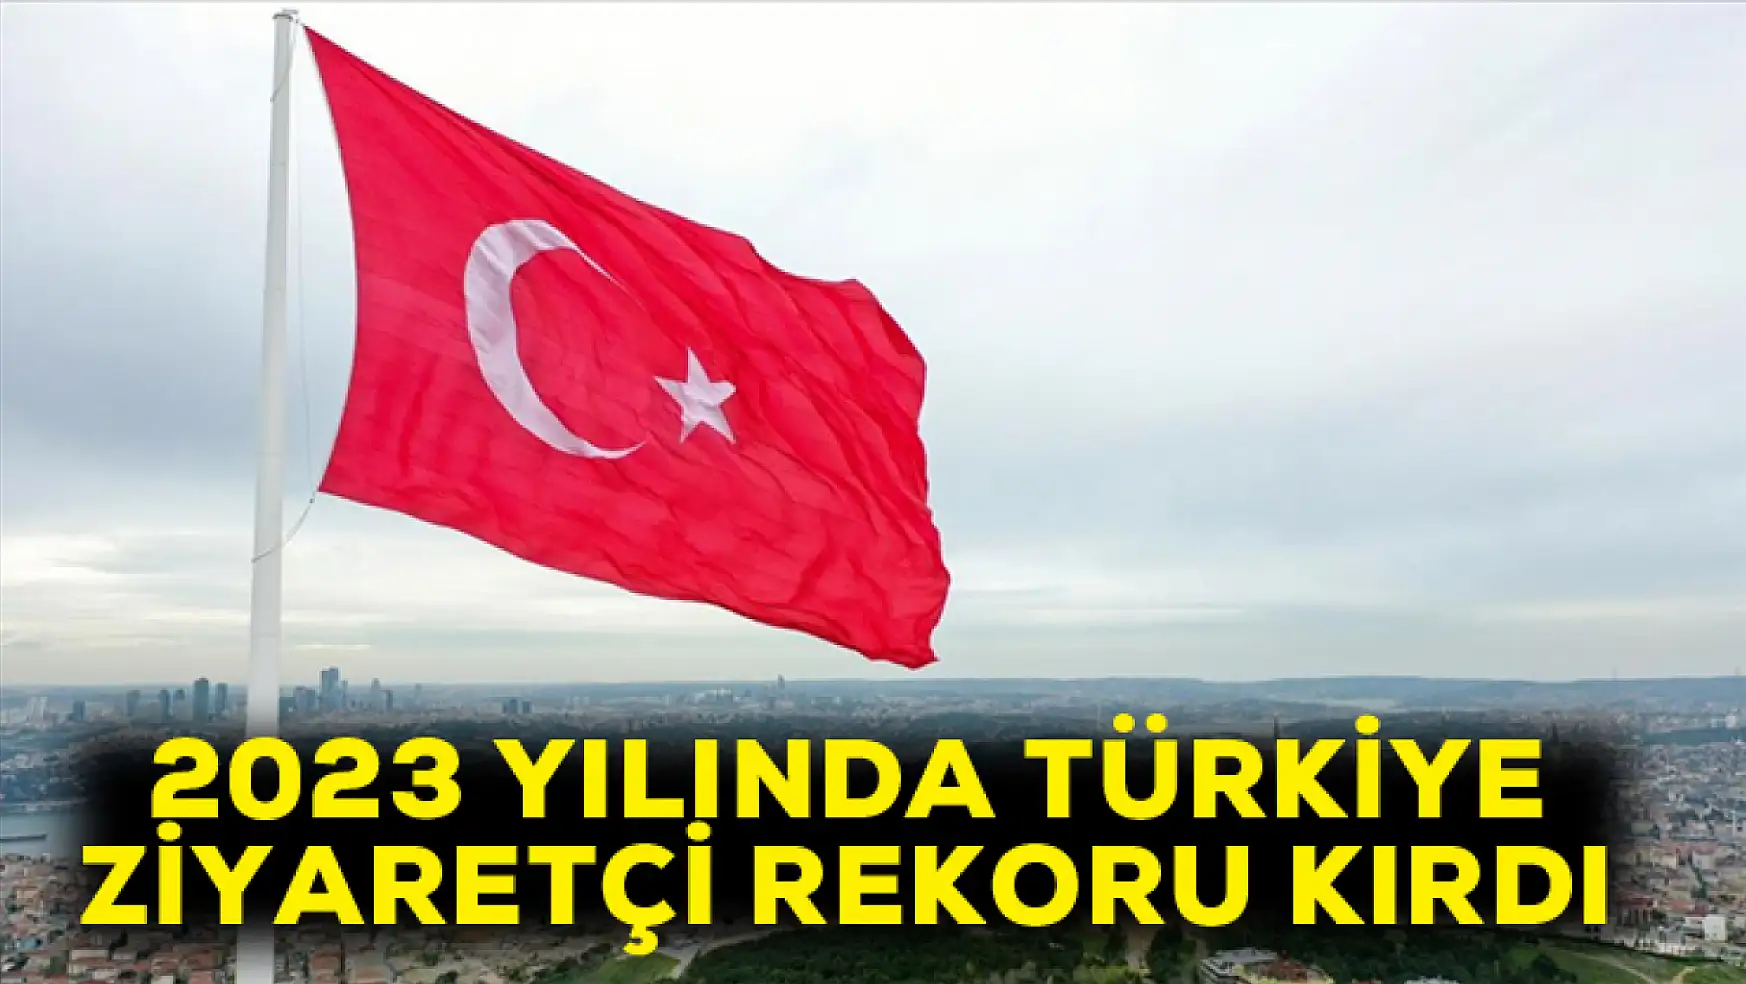 2023 yılında Türkiye ziyaretçi rekoru kırdı